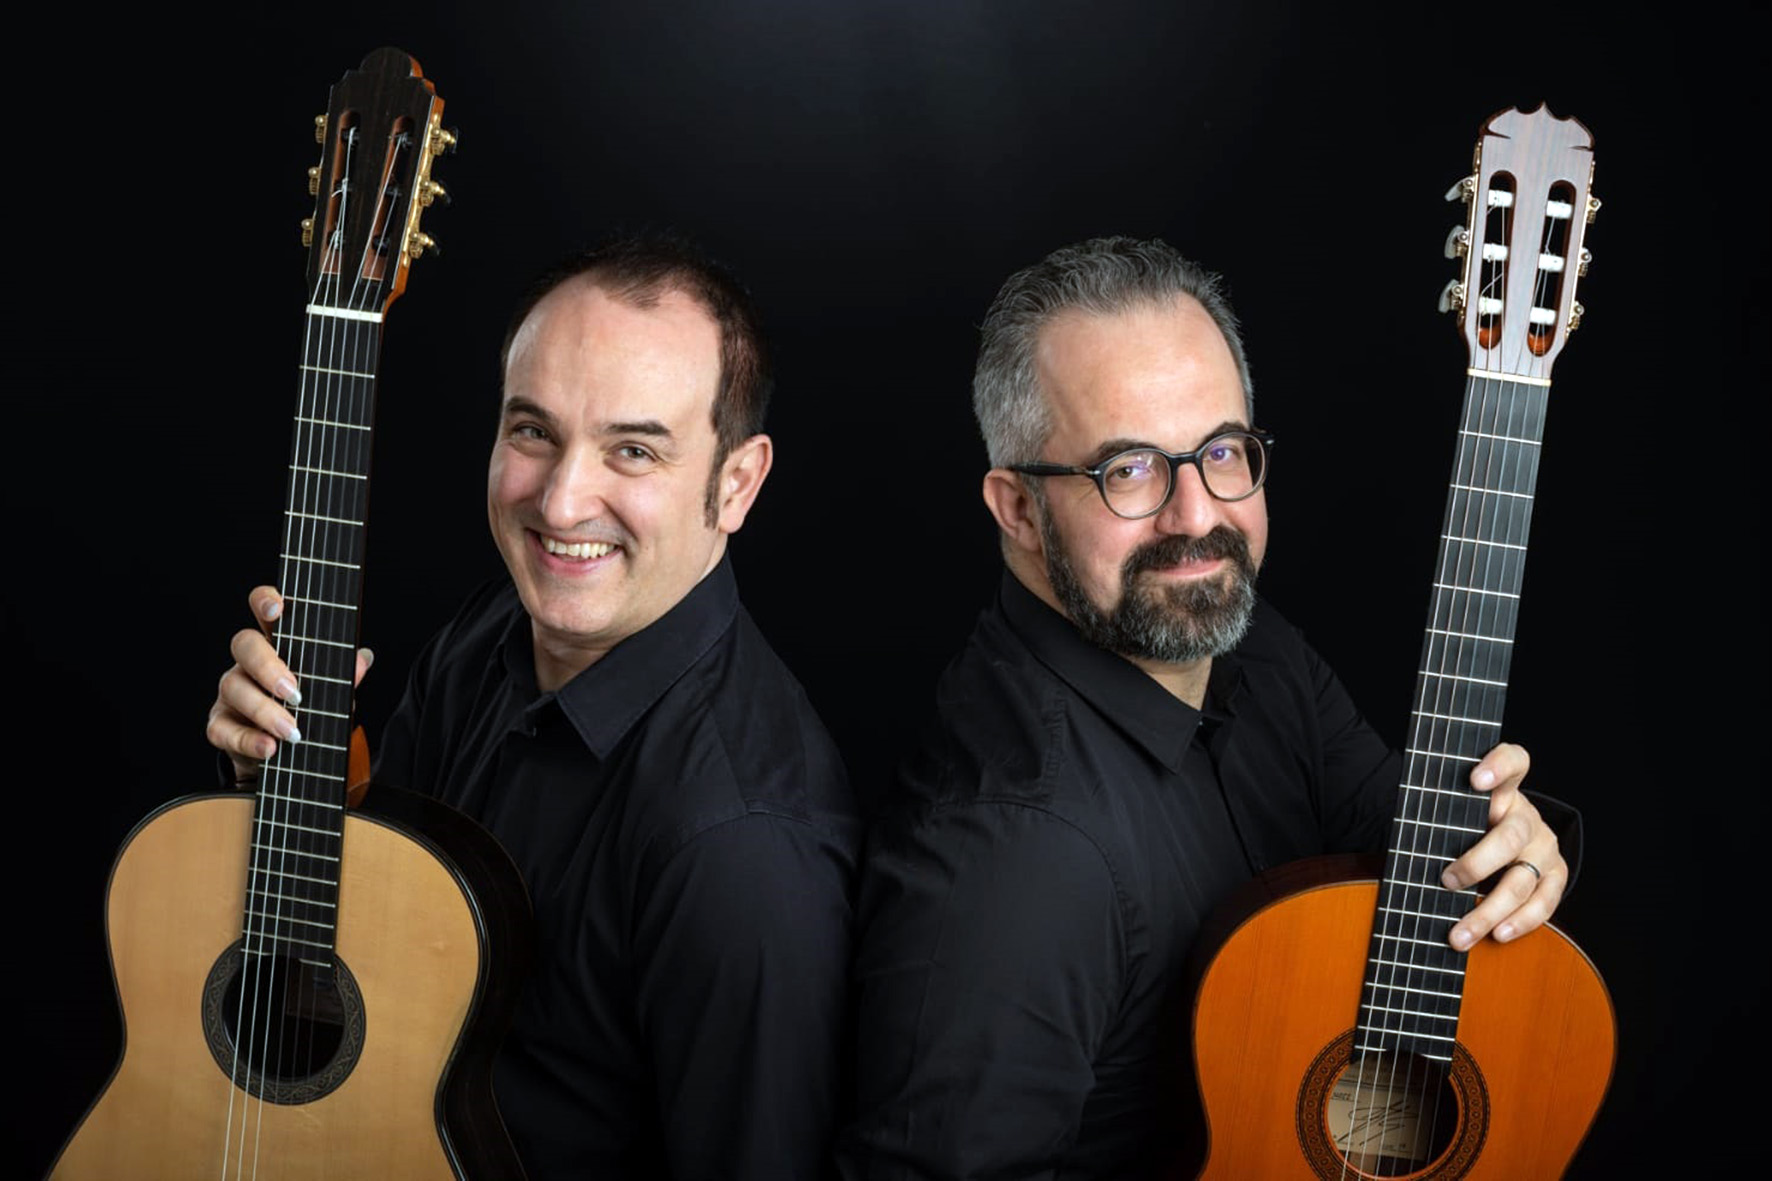 “Duo together”, Saggese e Tampalini in concerto per l’Arezzo Guit Fest